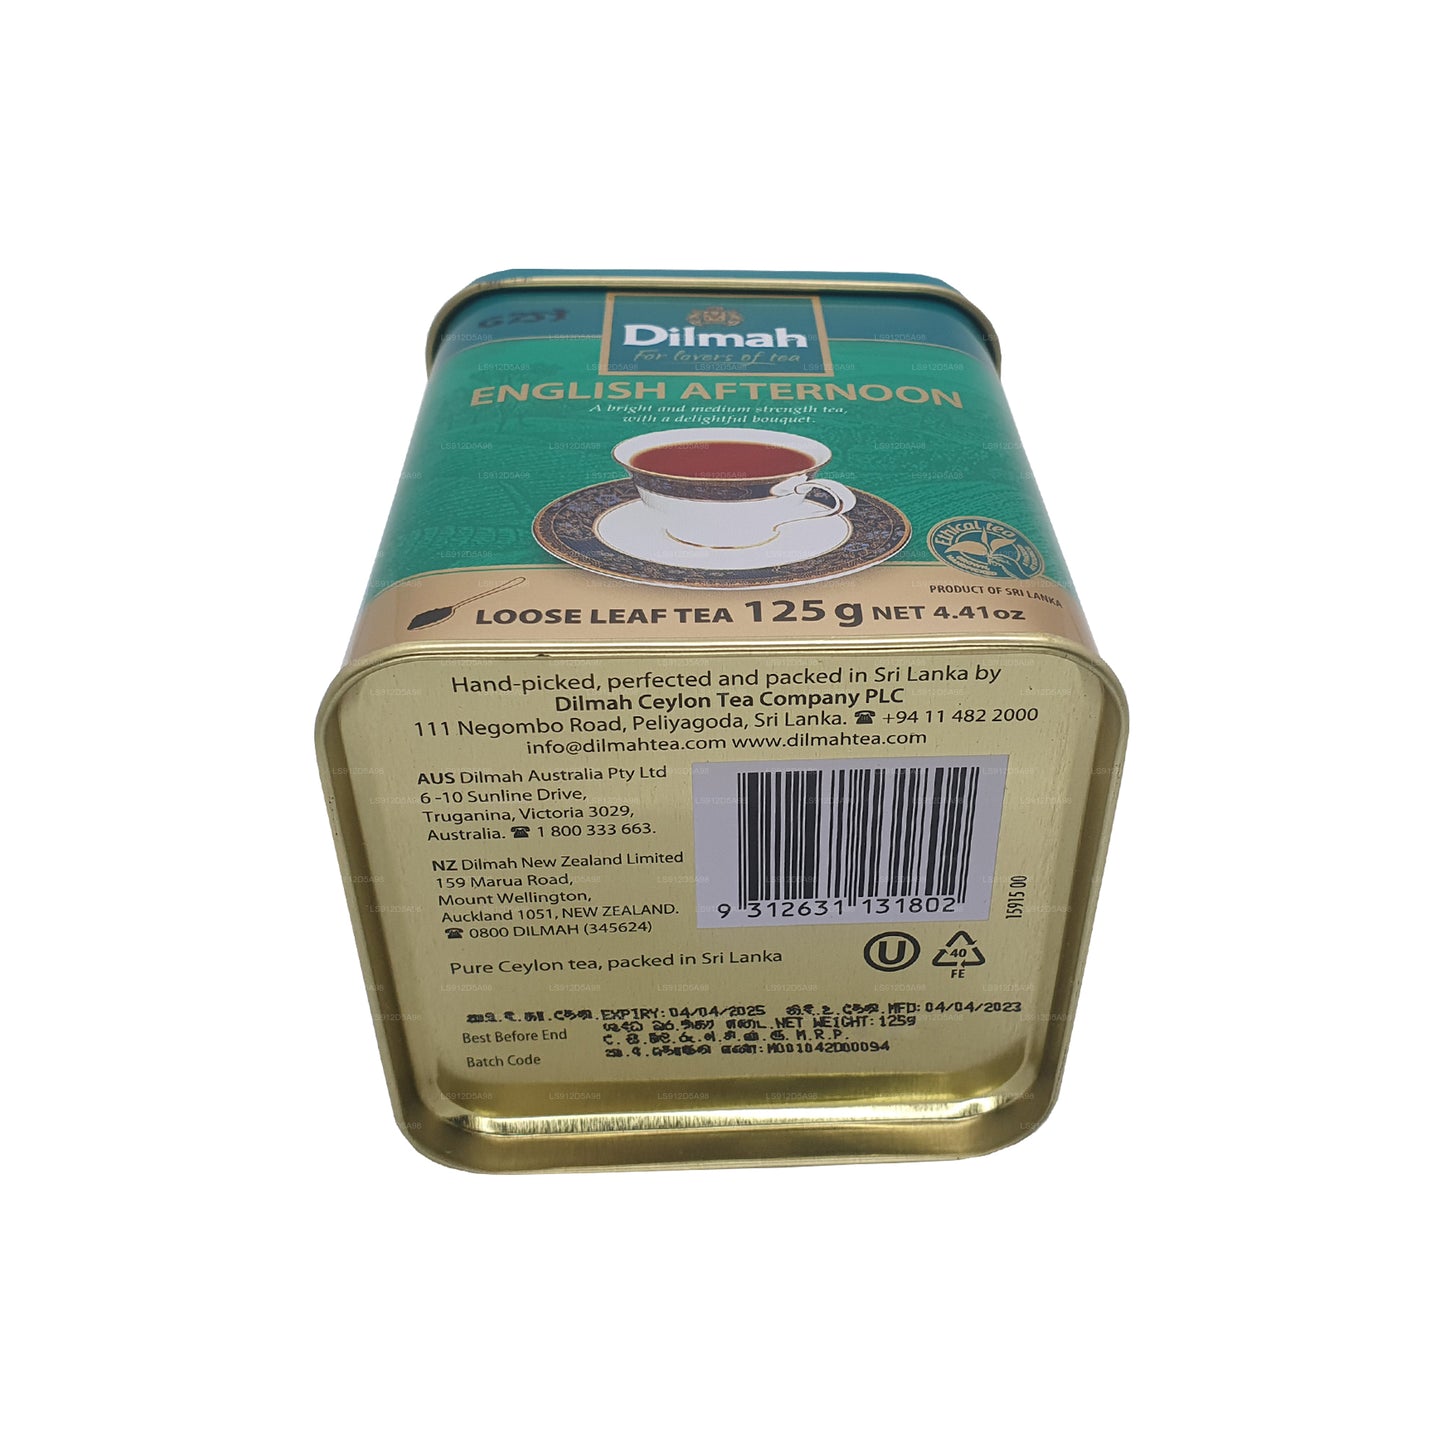 Dilmah angielska popołudniowa luźna herbata liściasta (125g)